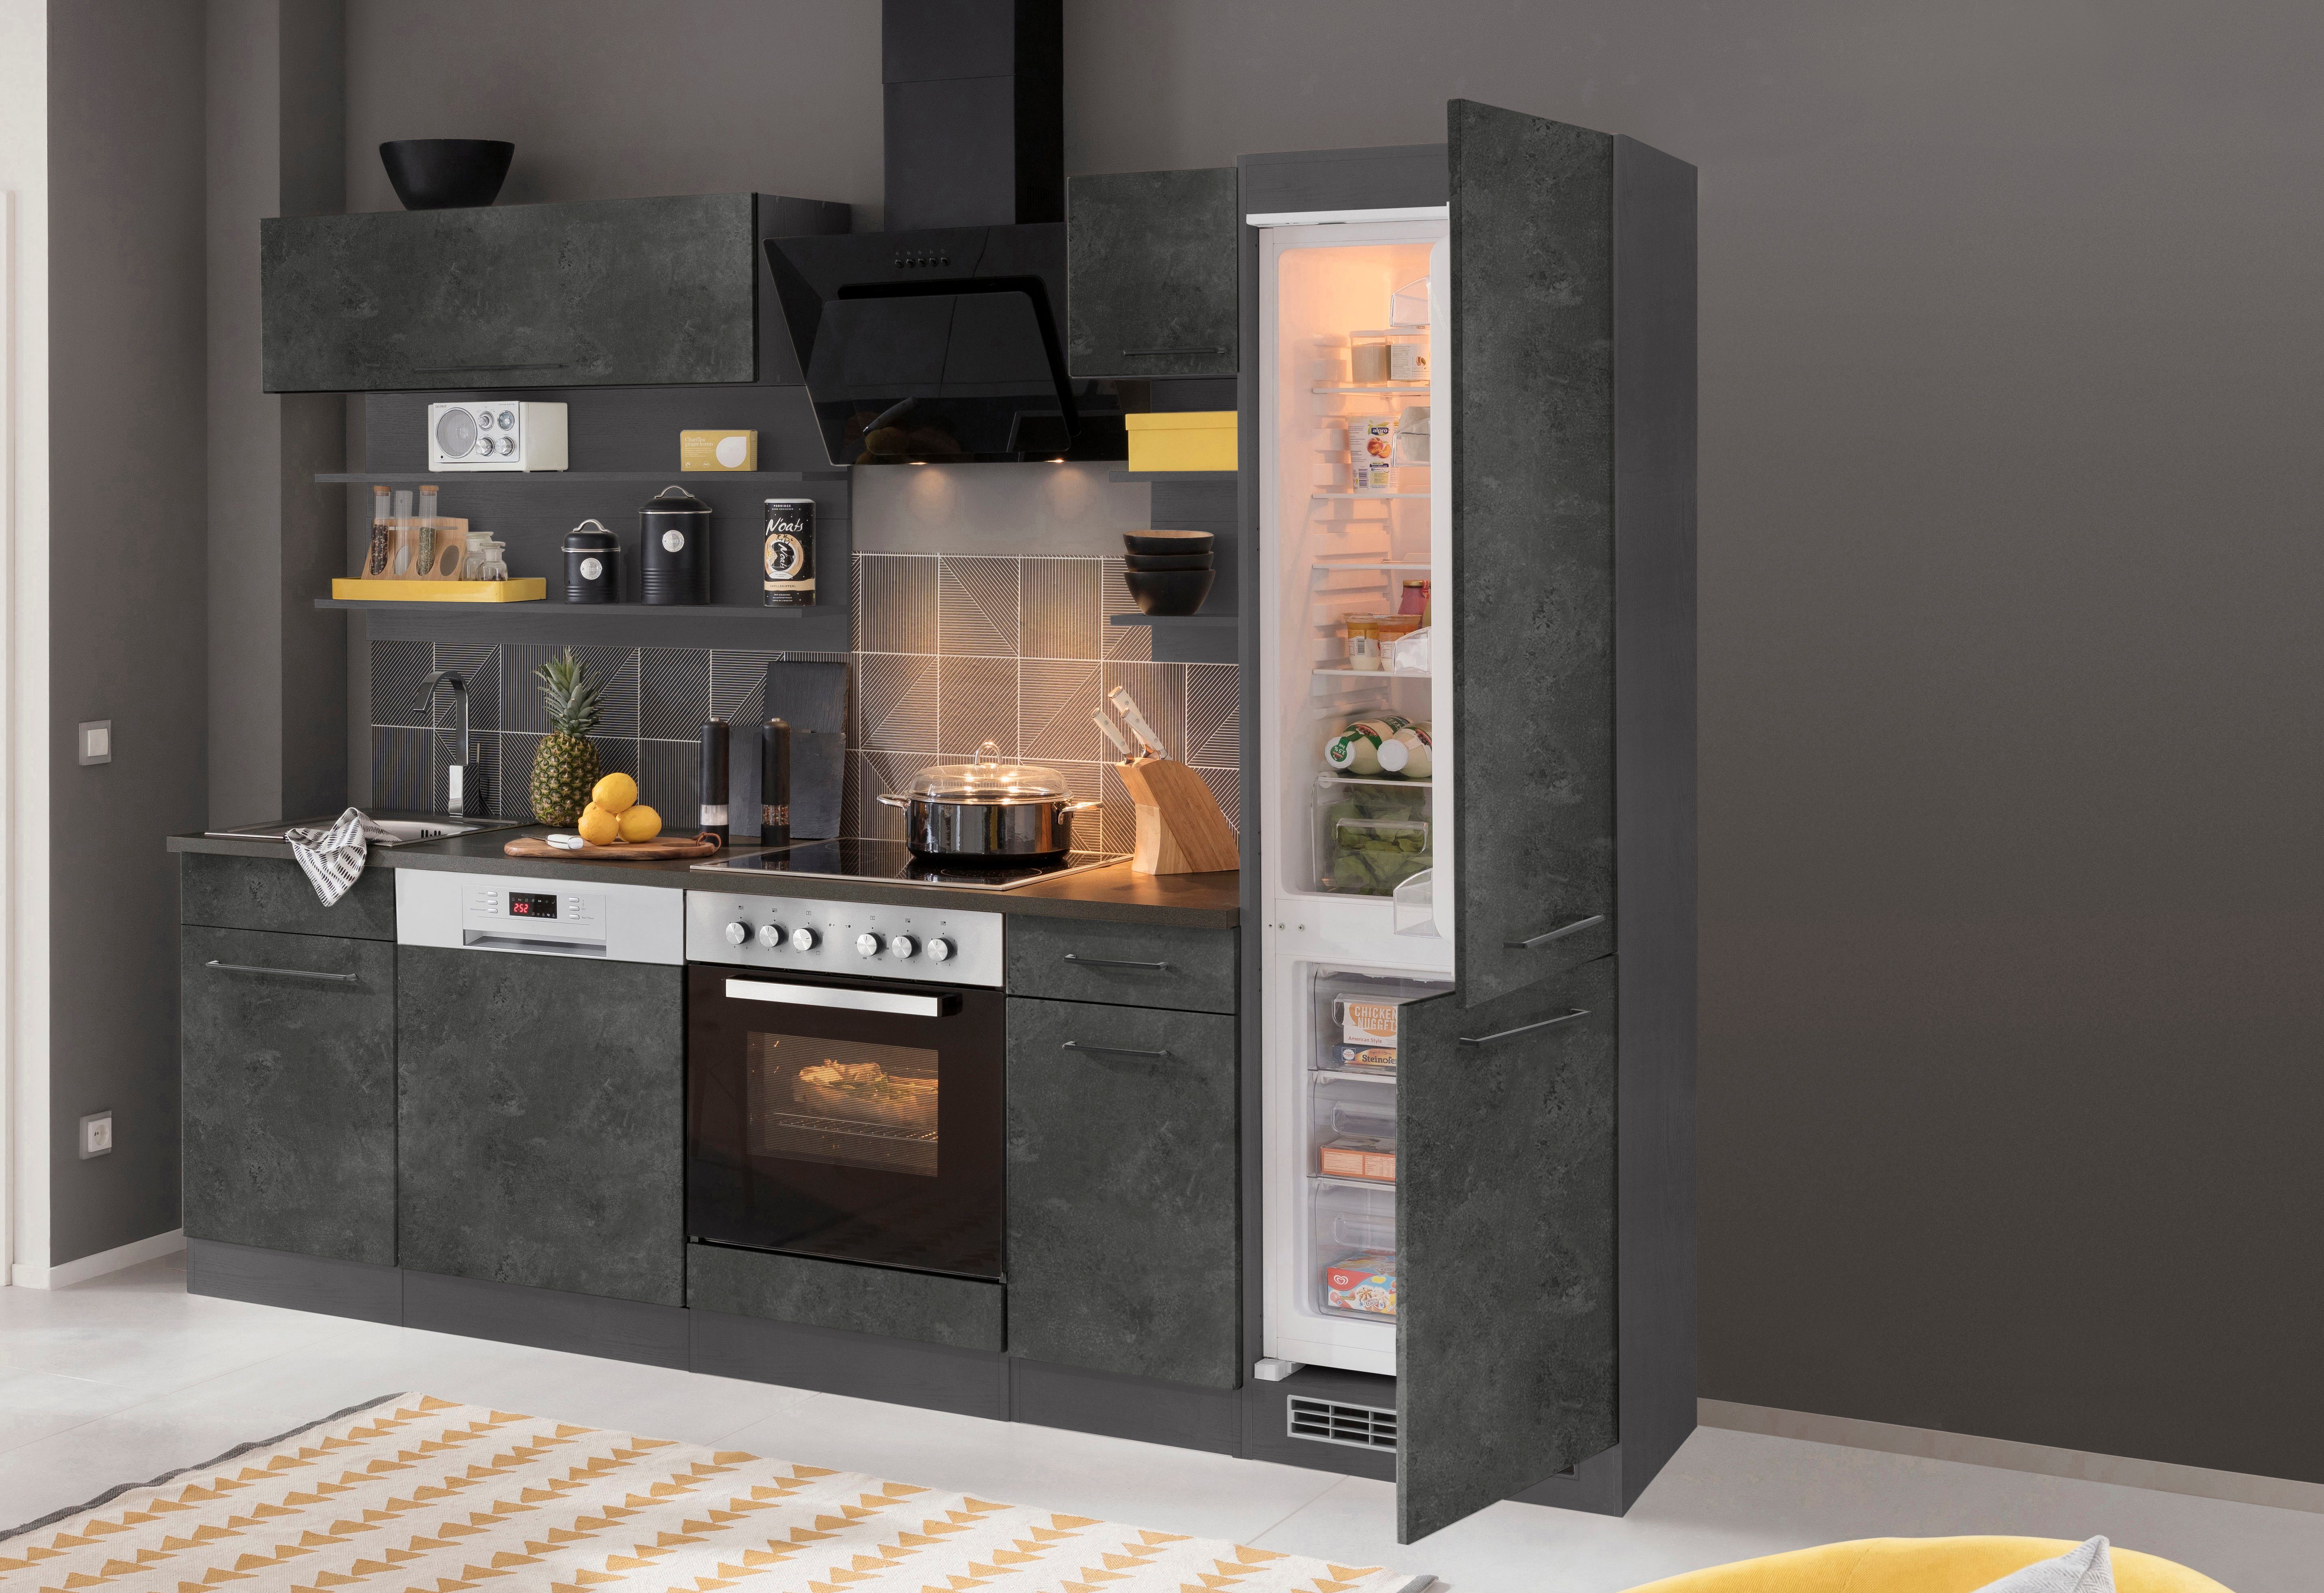 HELD MÖBEL Küchenzeile Tulsa, mit E-Geräten, Breite 270 cm, schwarze Metallgriffe, MDF Fronten